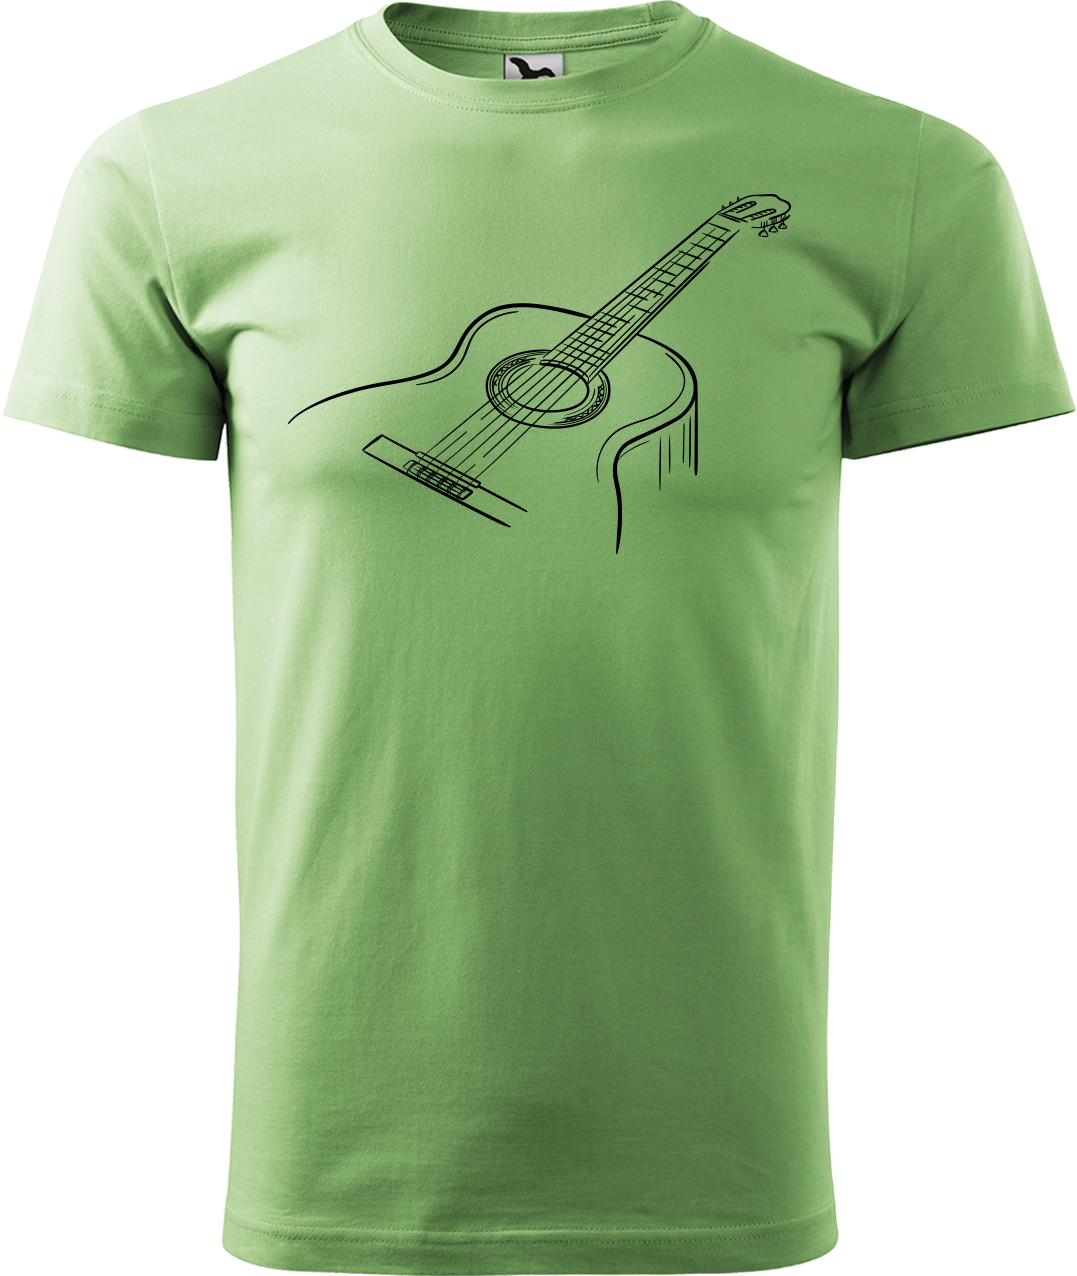 Pánské tričko s kytarou - Klasická kytara Velikost: 3XL, Barva: Trávově zelená (39)